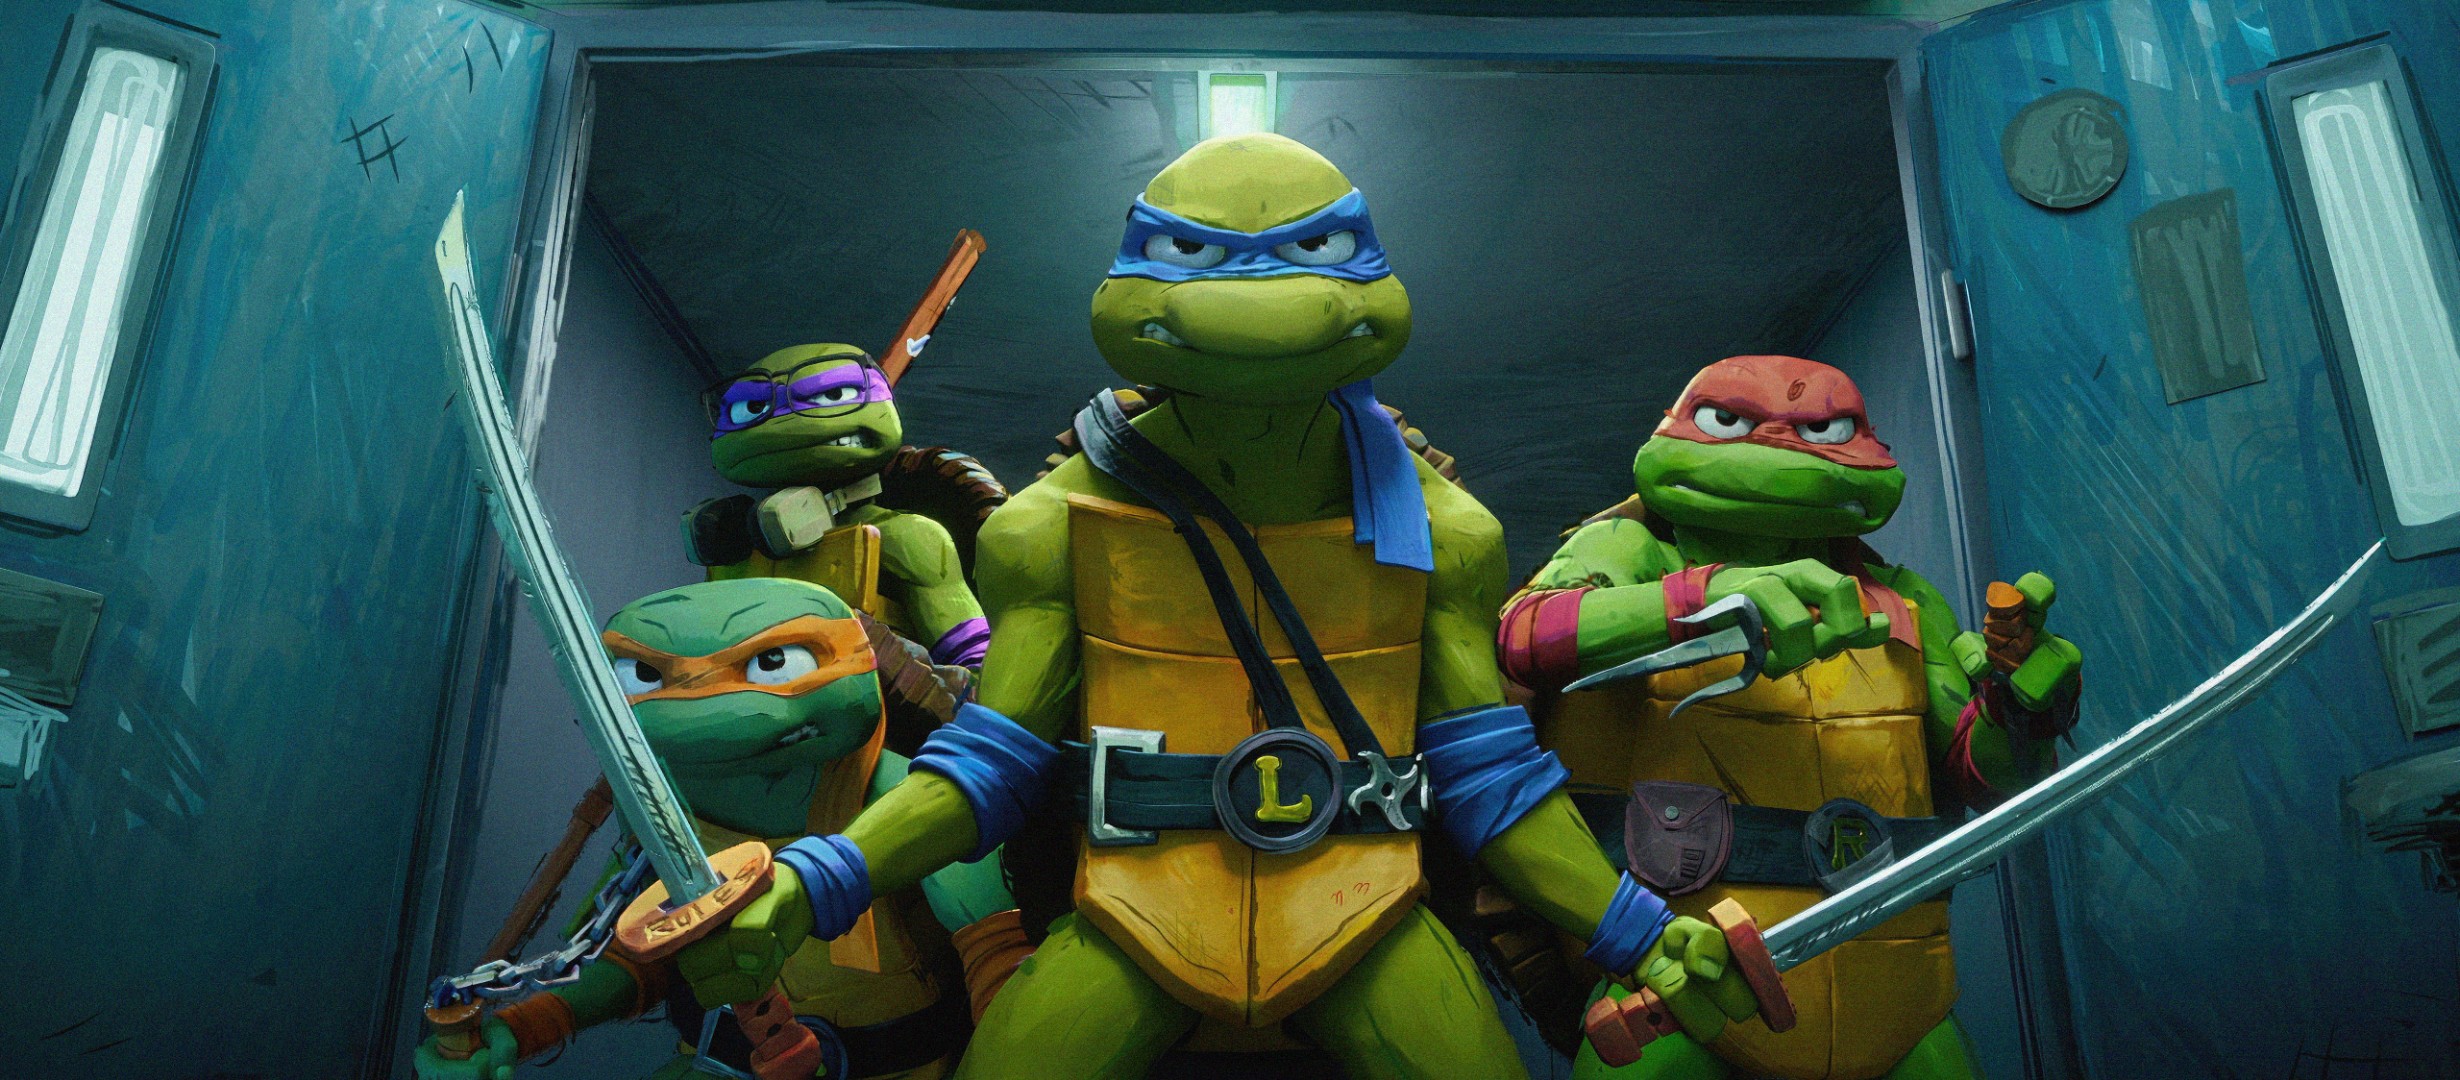 The teenage mutant ninja turtles ready to fight